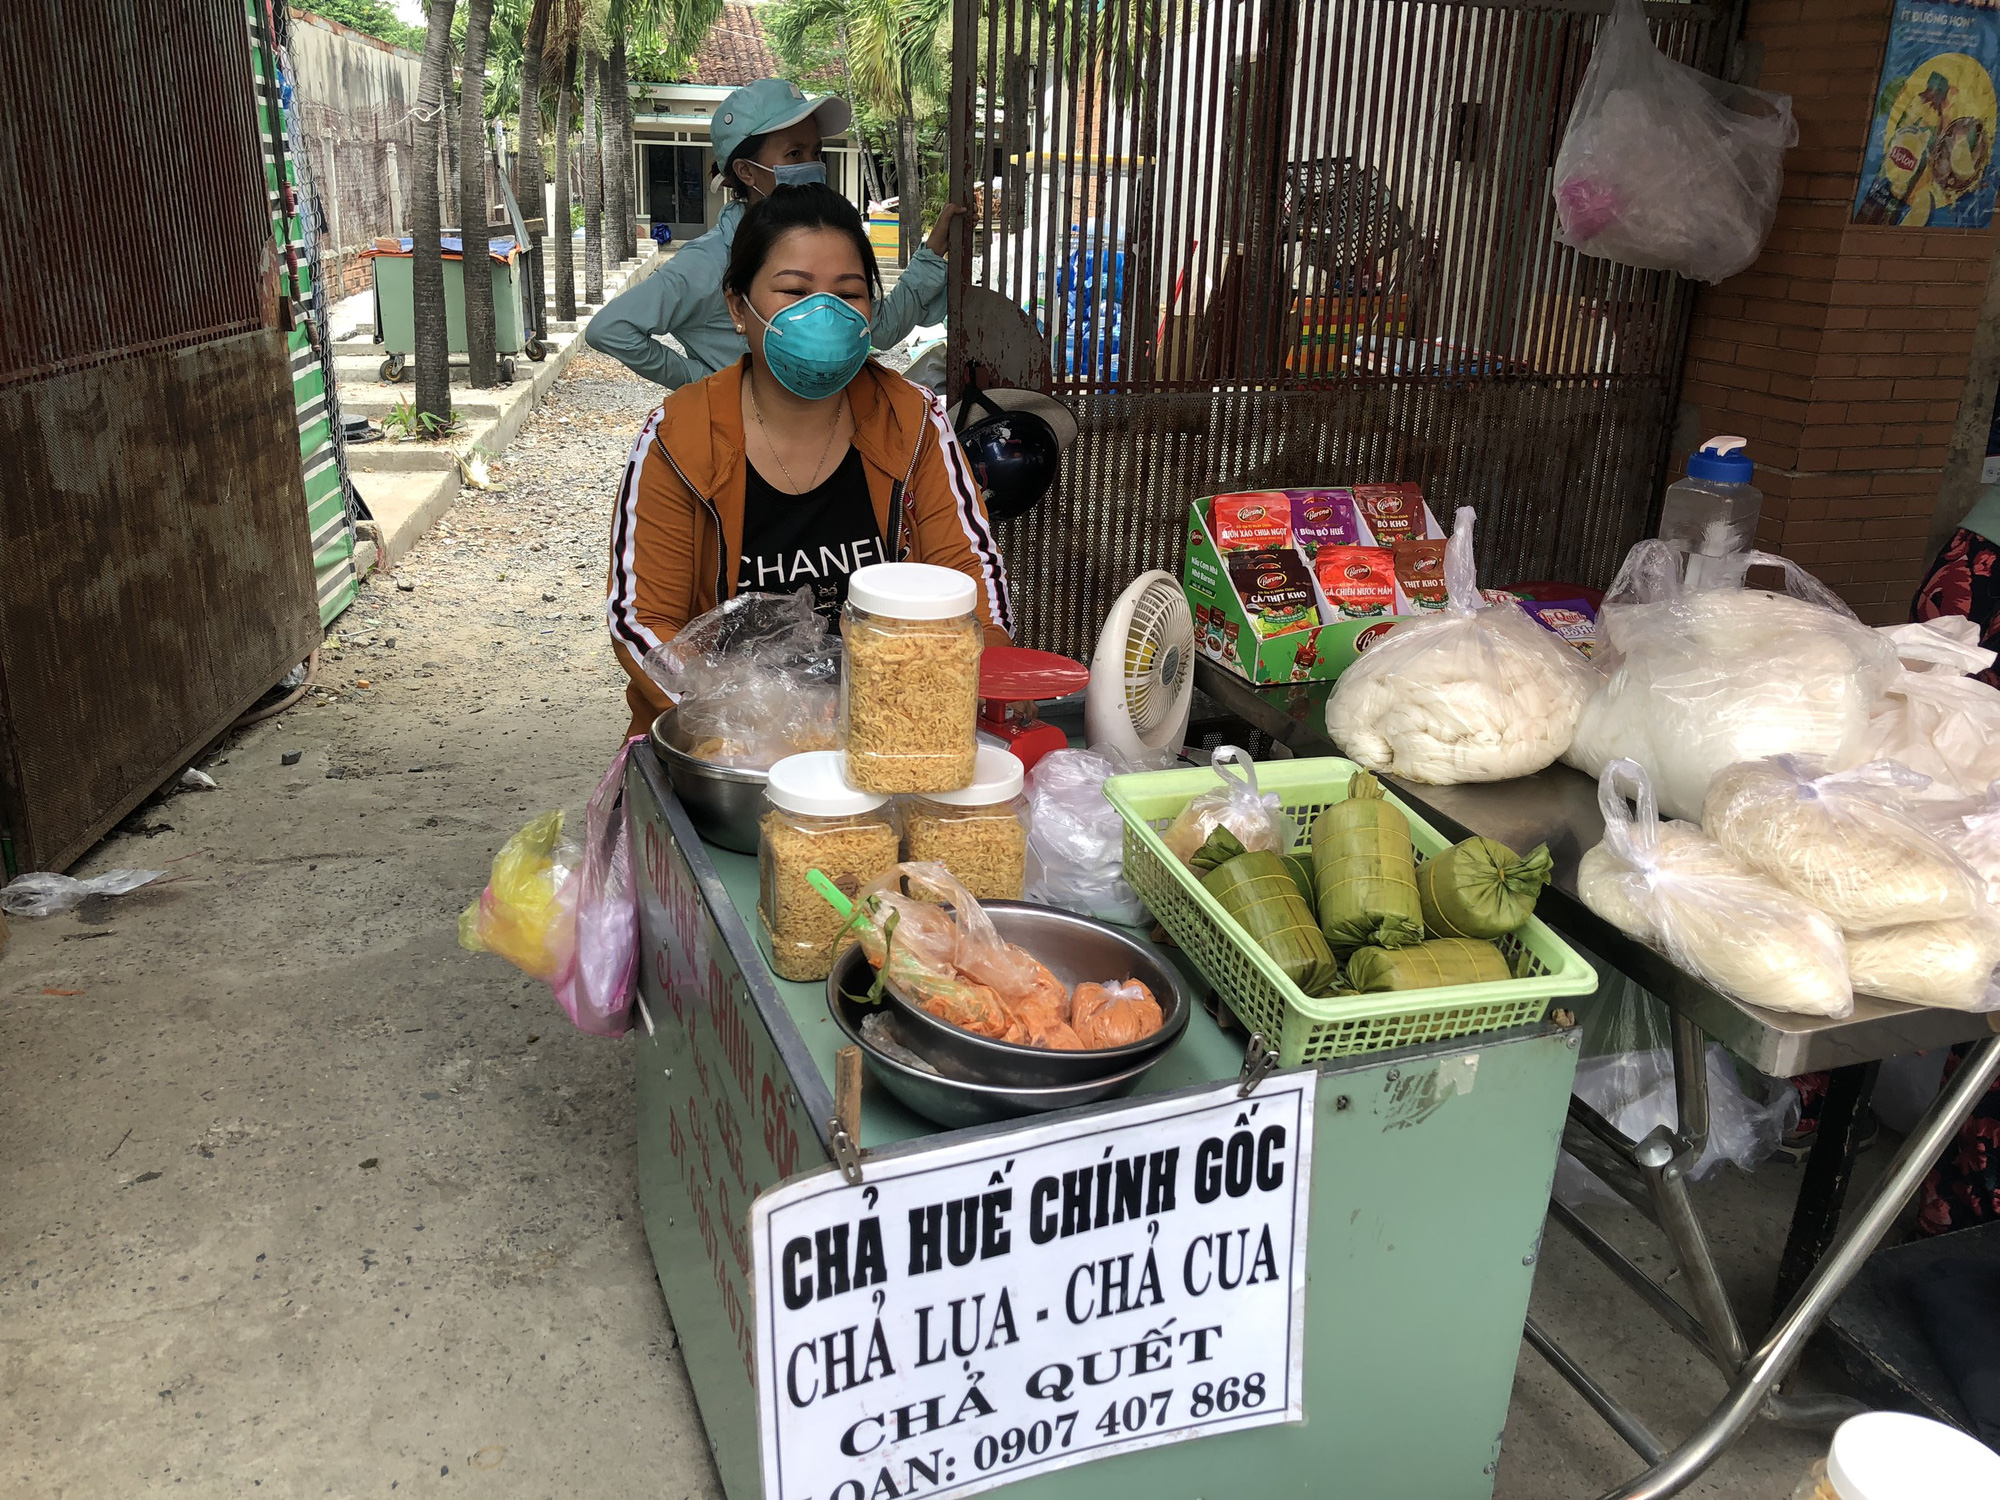 
Ngôi chợ tự phát với những tiếng &quot;mô tê răng rứa&quot; nằm ở vùng ven Sài Gòn - Ảnh 3.